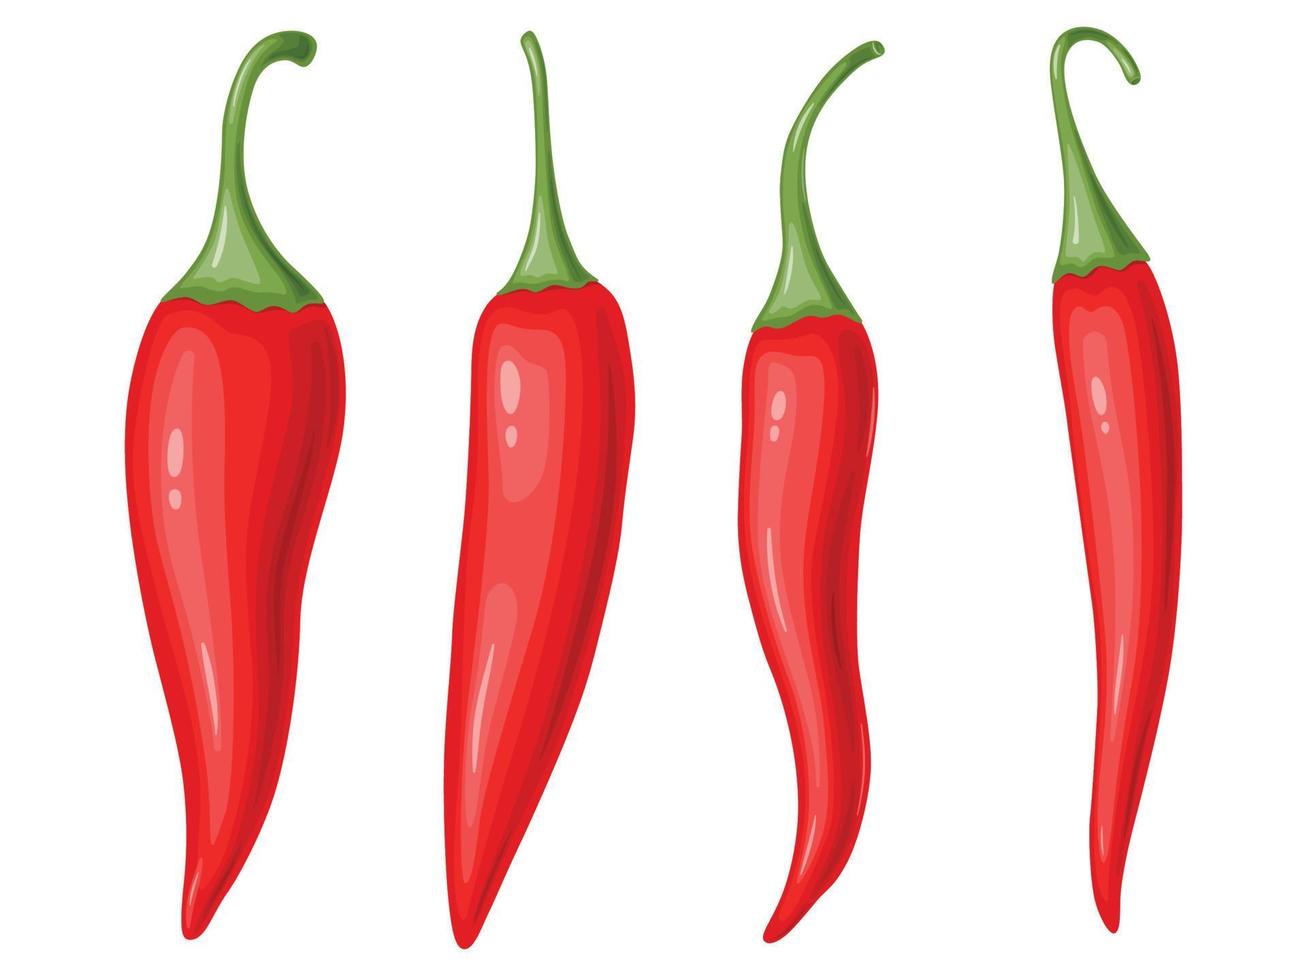 rode hete chili peper set. Mexicaans traditioneel eten. vector